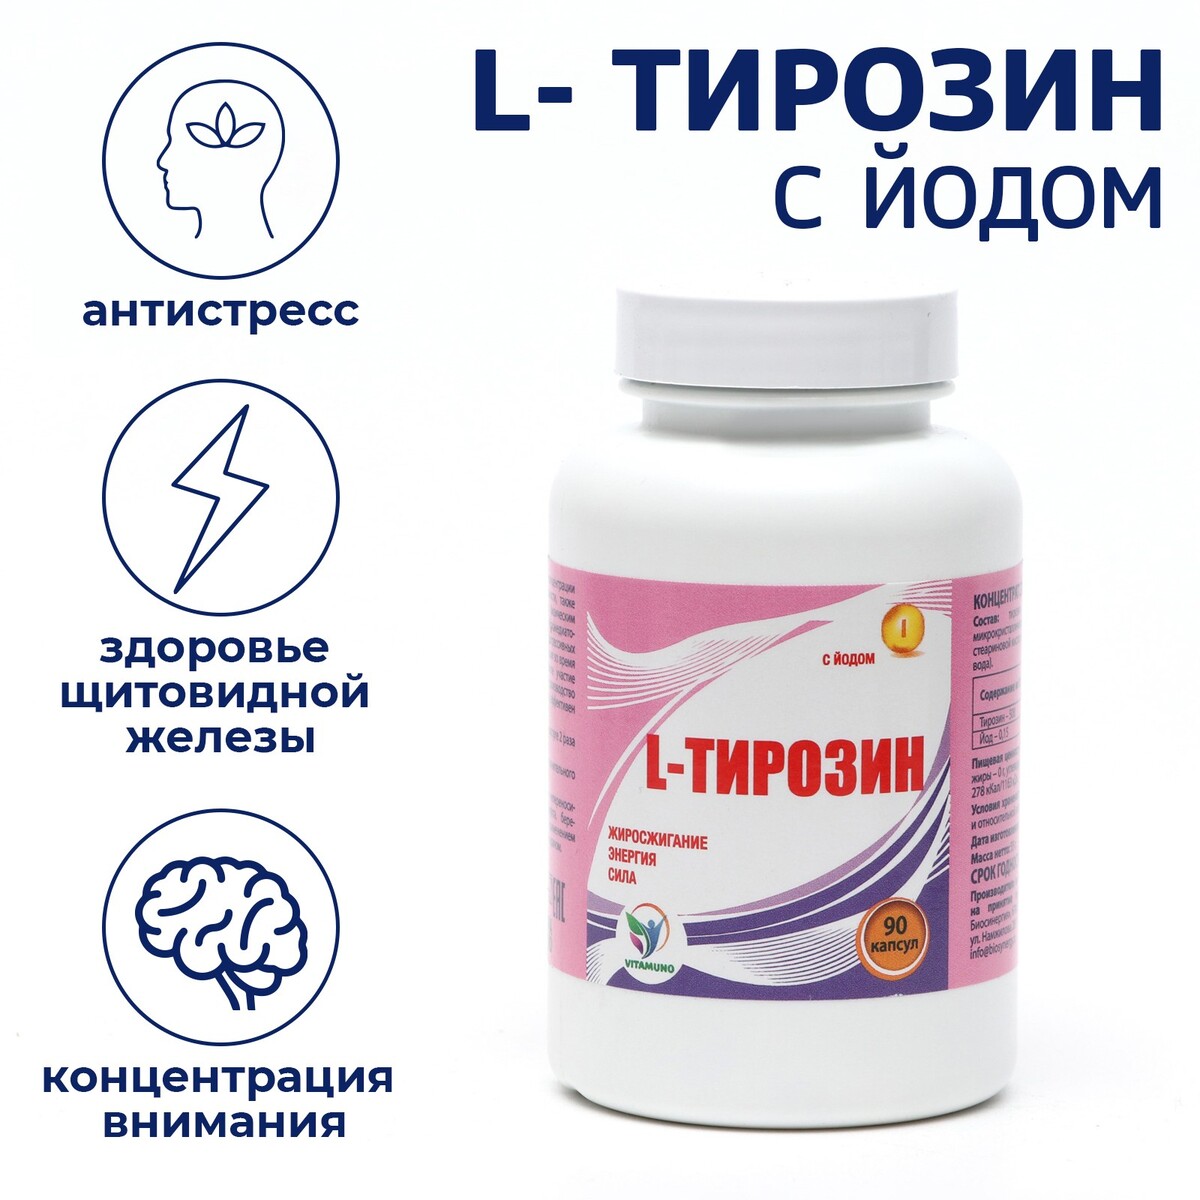 L-тирозин с йодом vitamuno жиросжигание, 90 капсул Vitamuno